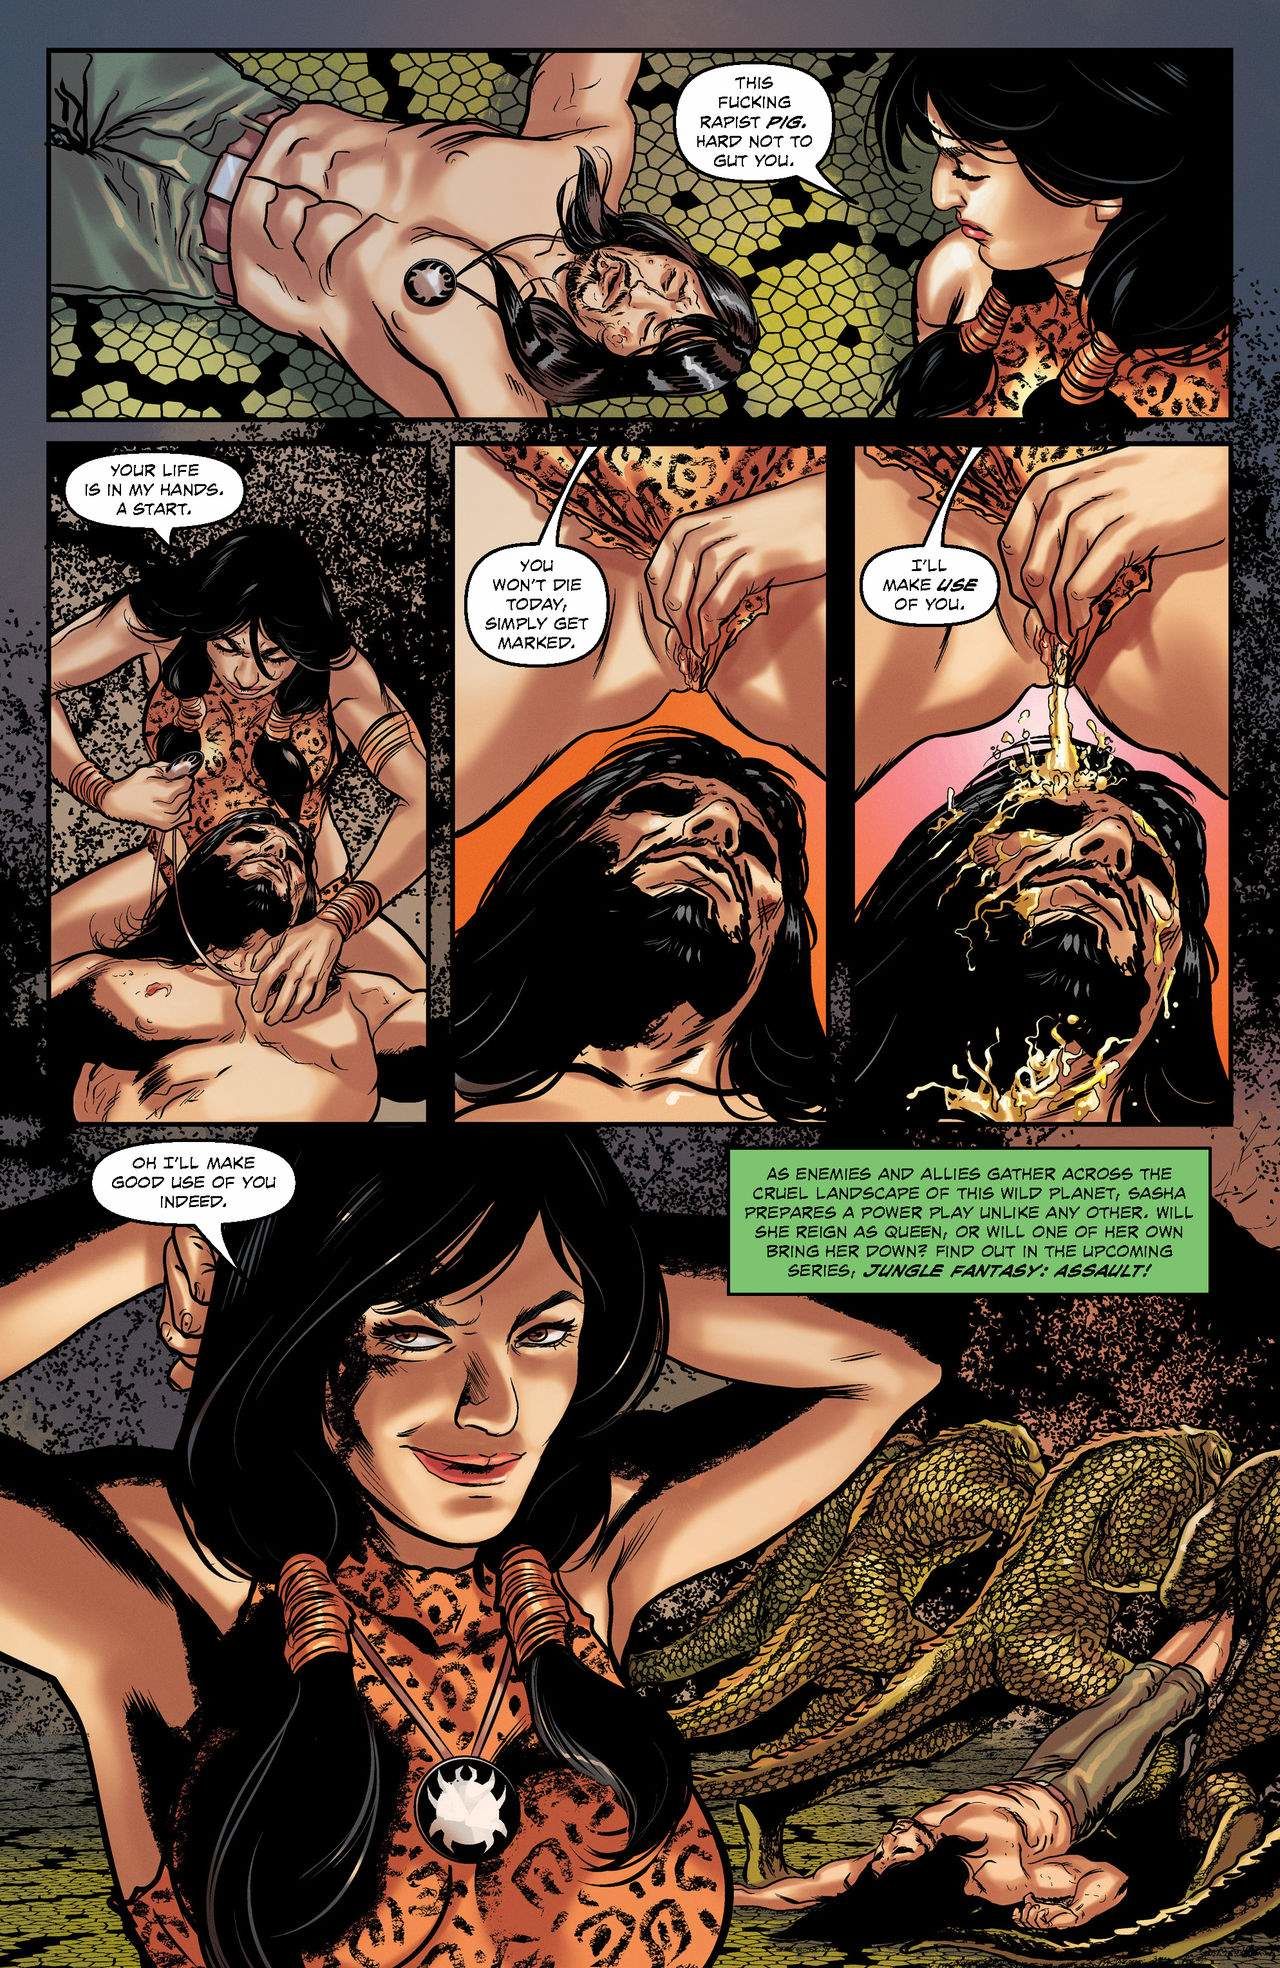 Jungle Fantasy Secrets Issue 04 page 10